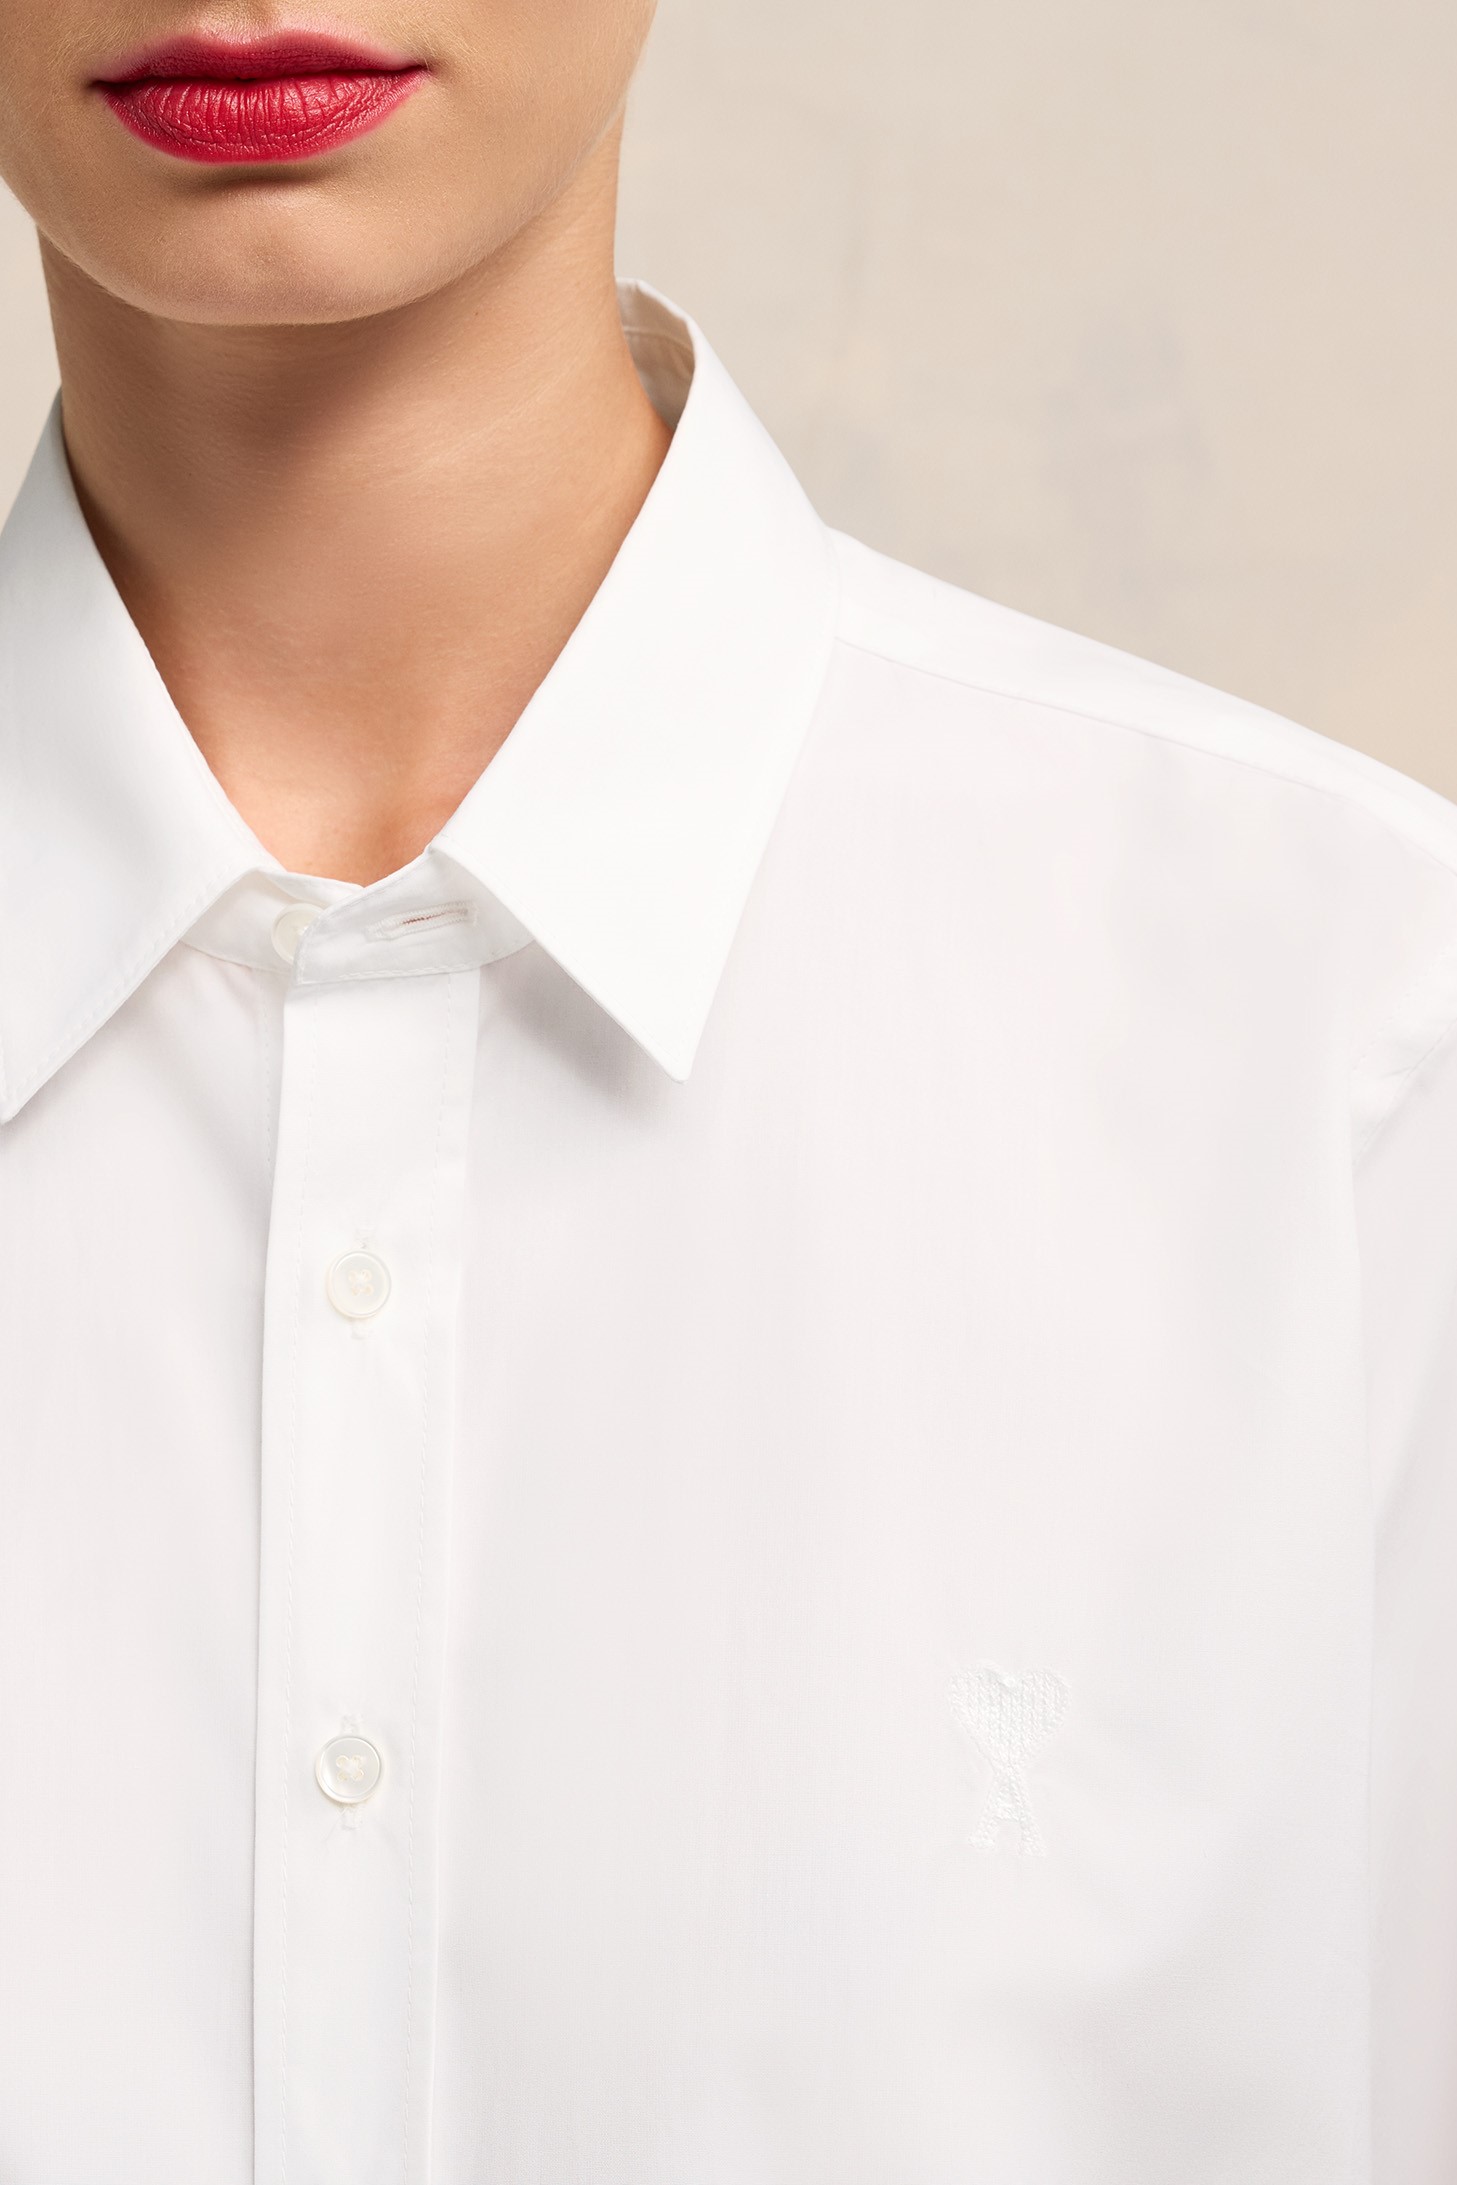 AMI PARIS de Coeur Classic Shirt in White XL